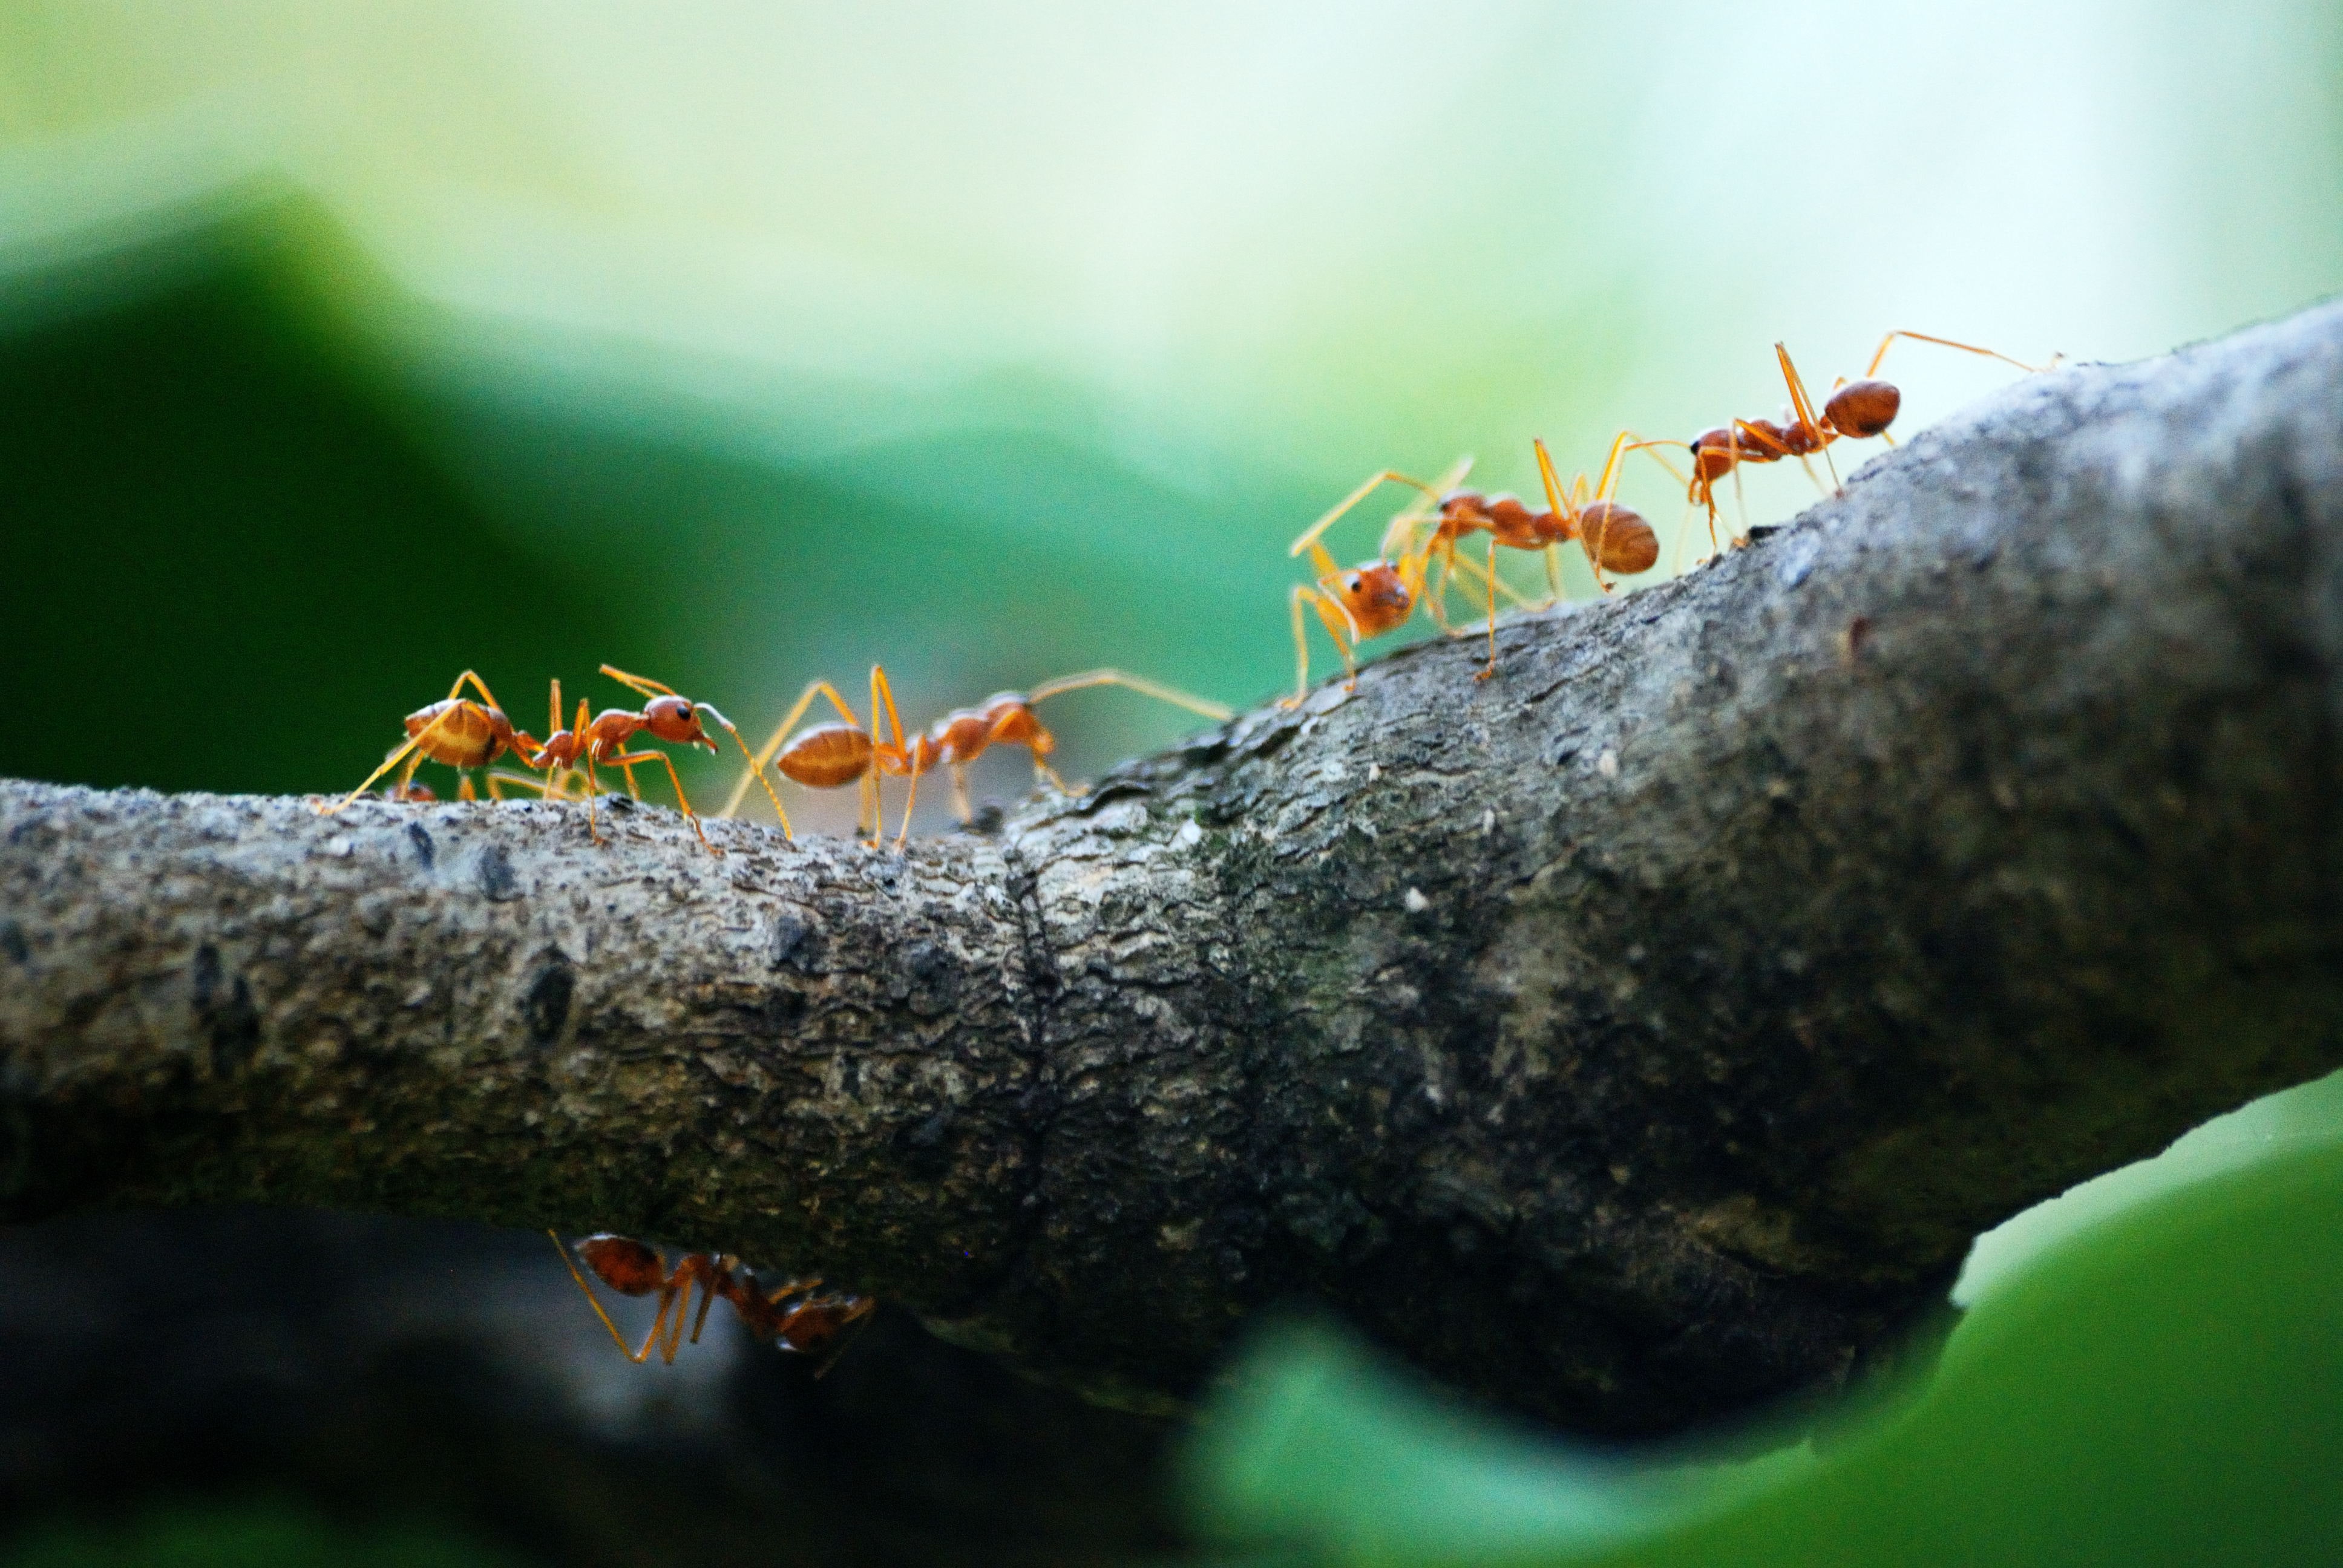 Γερμανία: Μυρμήγκια έκοψαν το ίντερνετ σε χωριό κάνοντας... σεξ